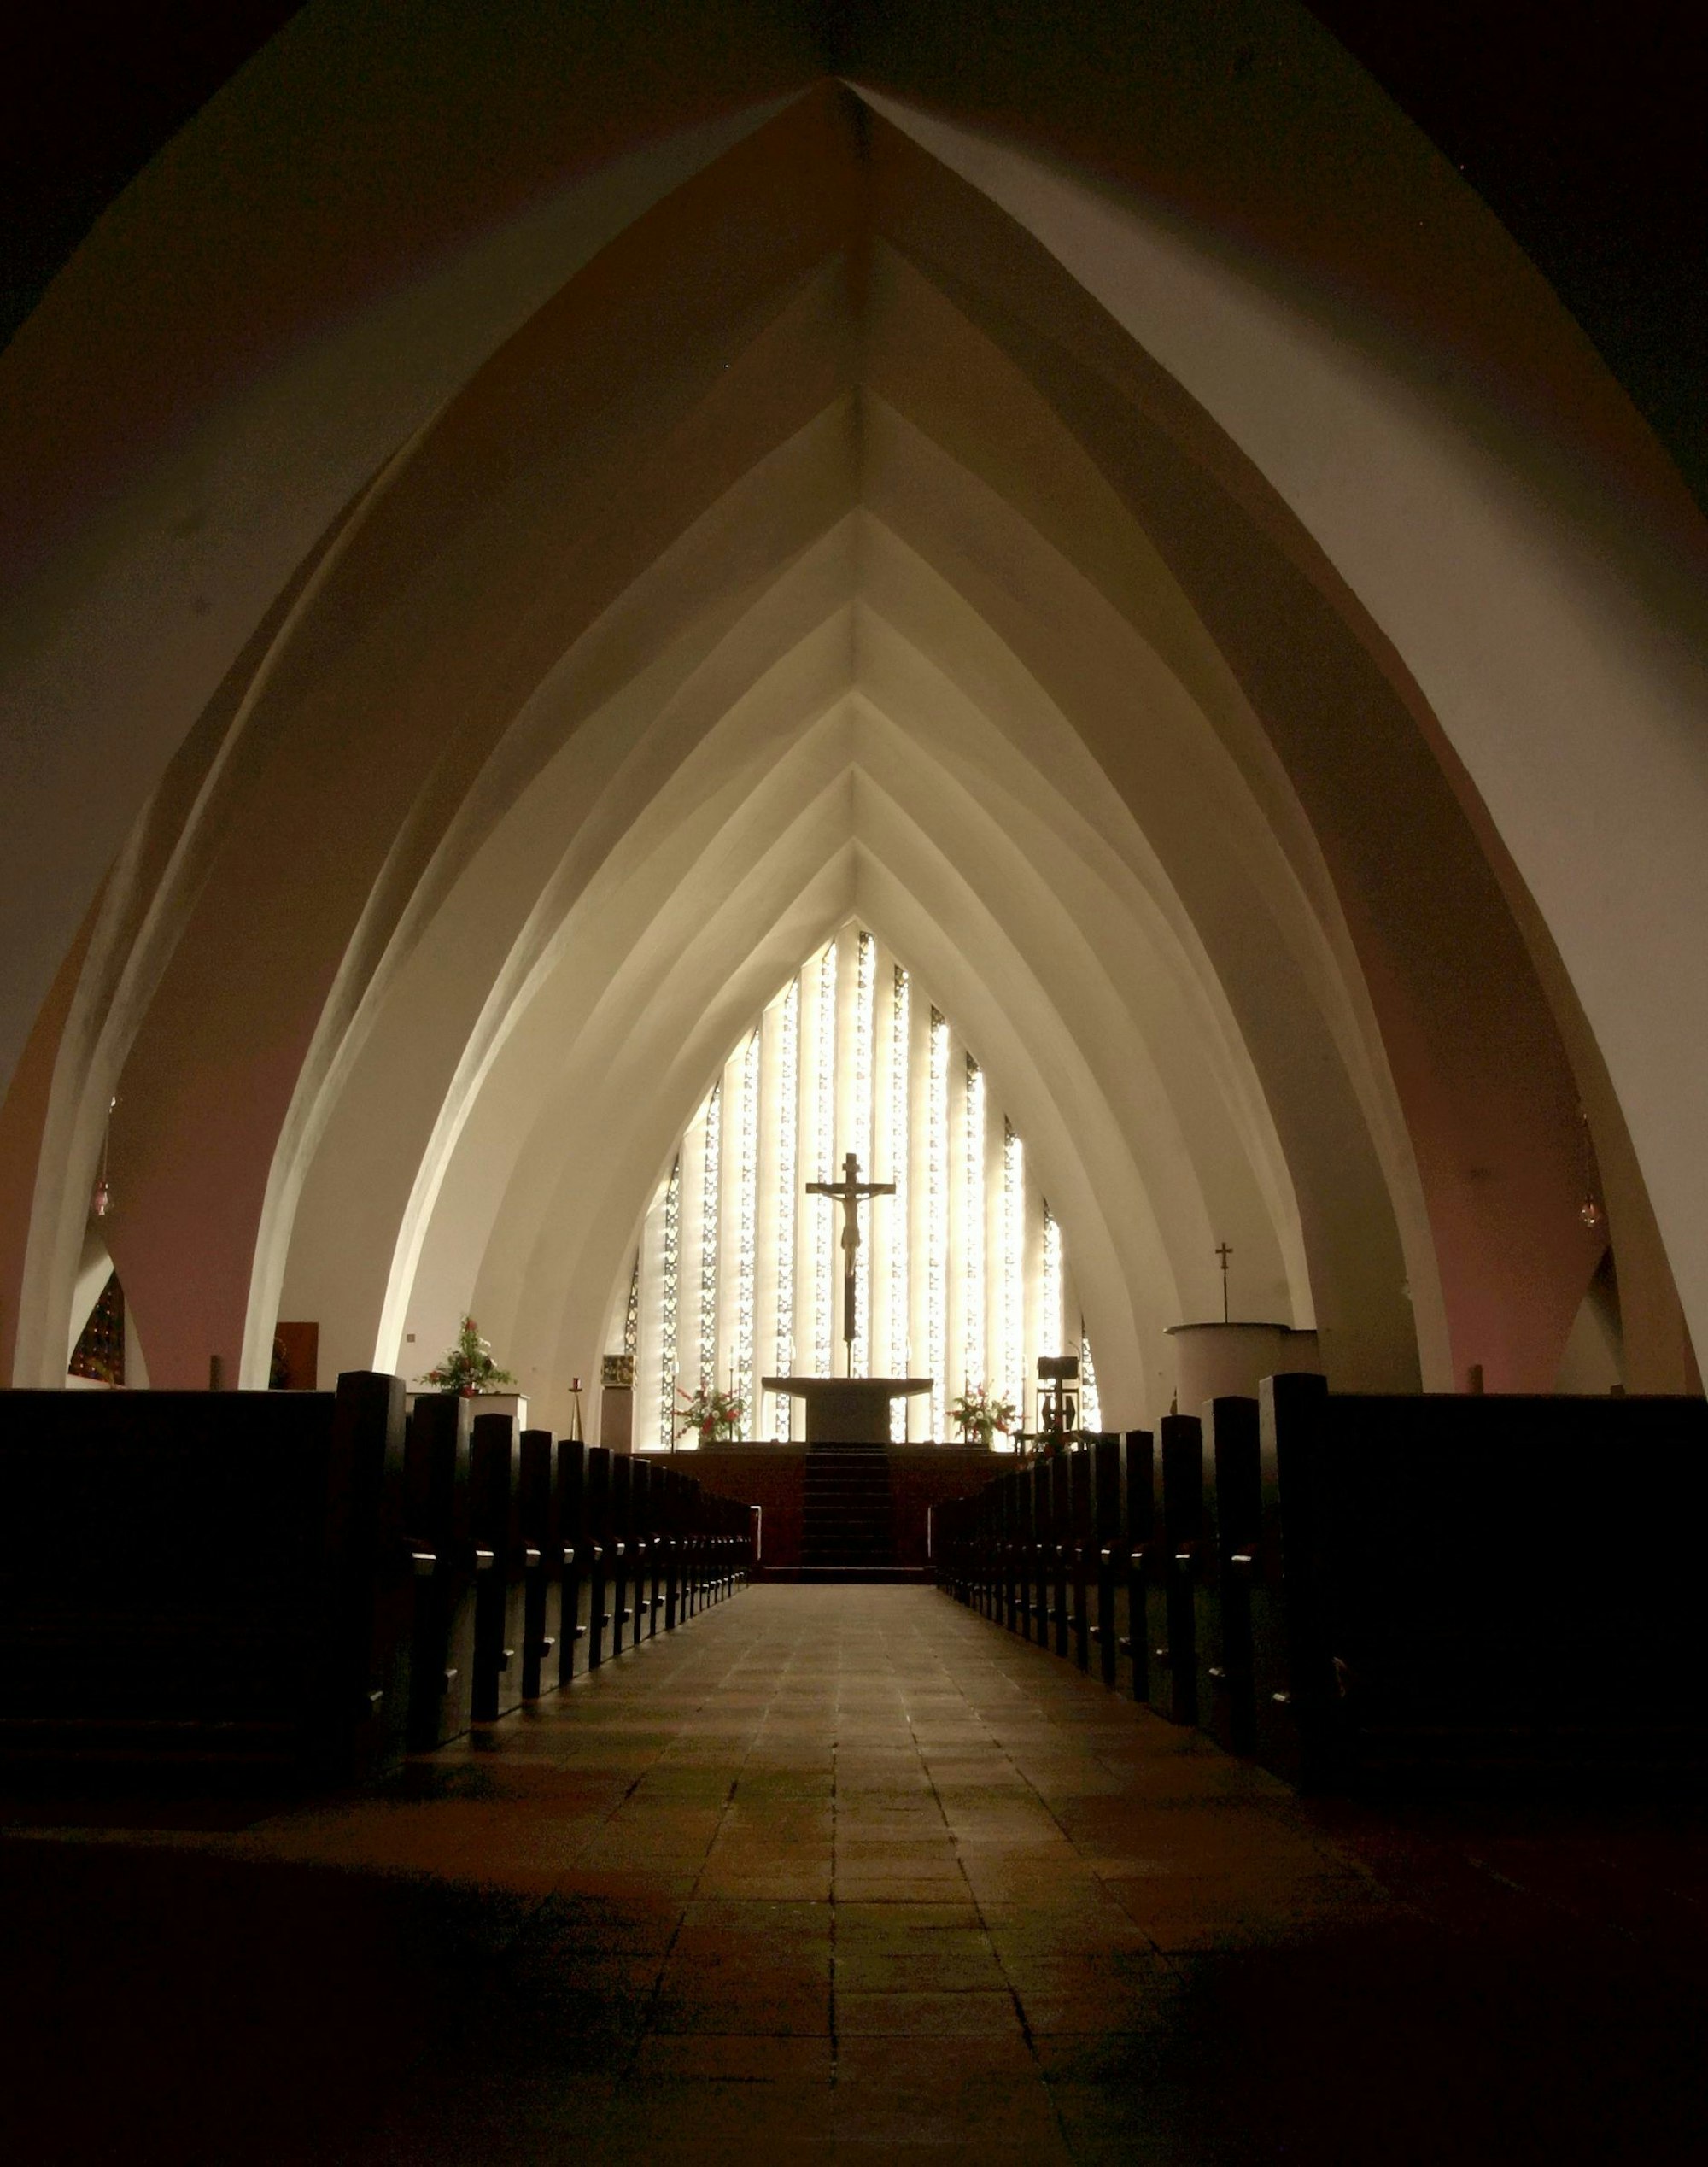 Blick auf den Altarraum von St. Apollinaris in Frielingsdorf, im Bild sind das Kirchenschiff von Dominikus Böhm, der Altarraum von Gottfried Böhm und das Fenster vonHerbert Bienhaus zu sehen.